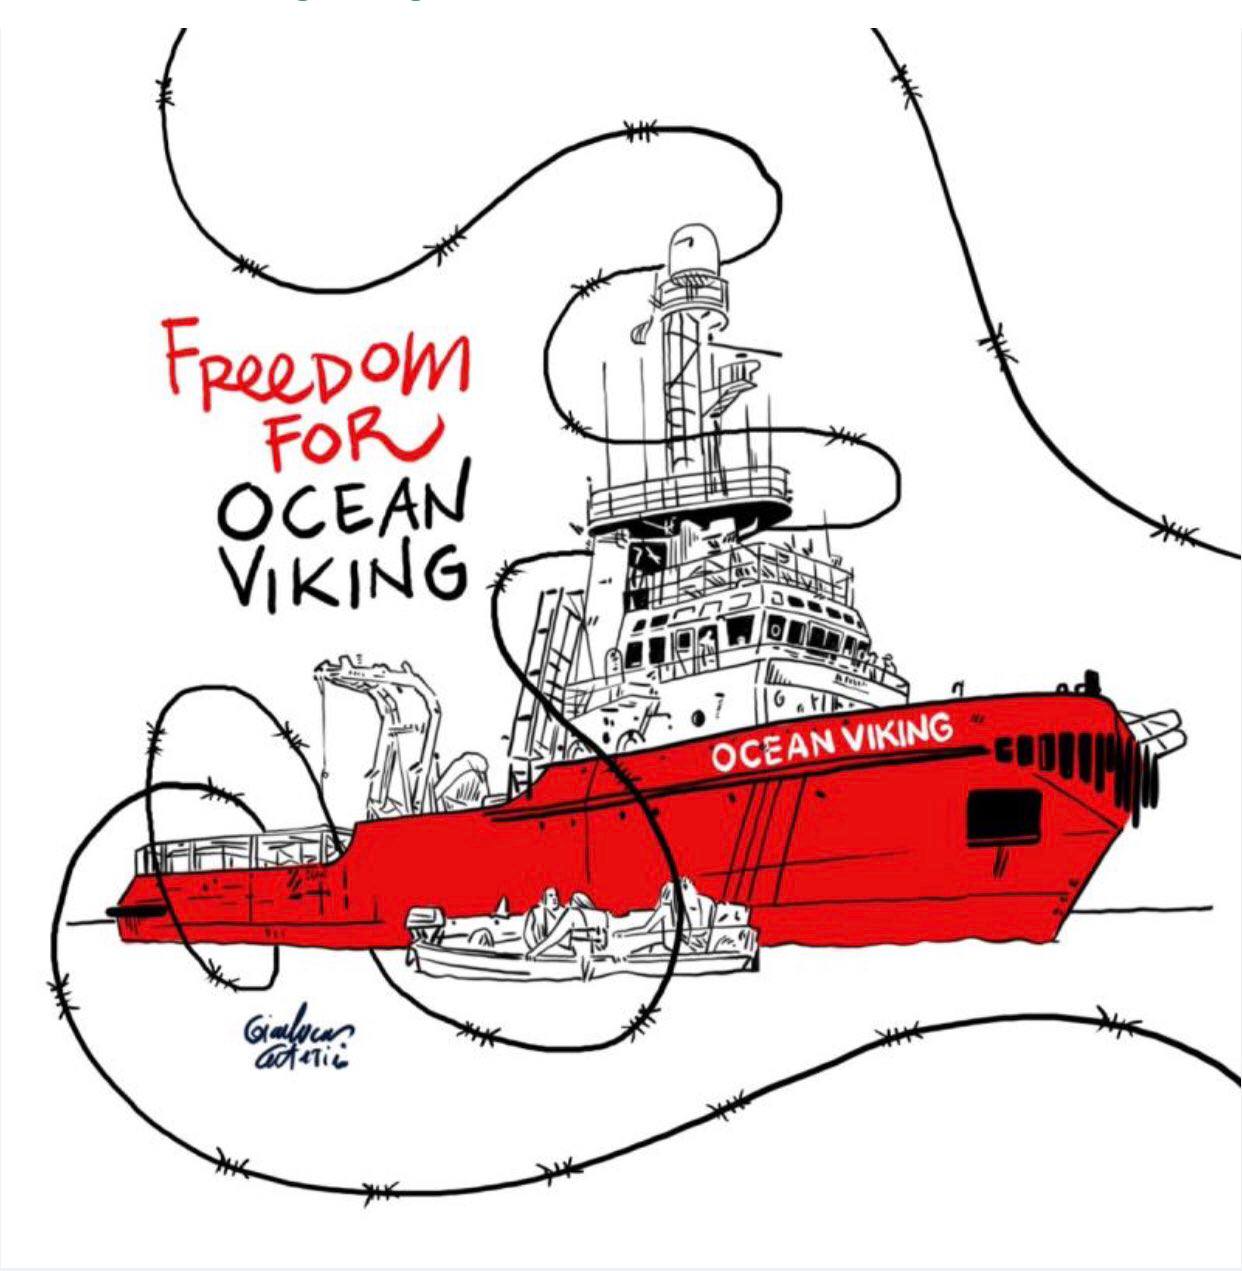 Dessin crédit inconnu. On voit l’Ocean Viking et un canot de sauvetage entourés de barbelés. Message : « Freedom for Ocean Viking » (liberté pour l’Ocean Viking ».